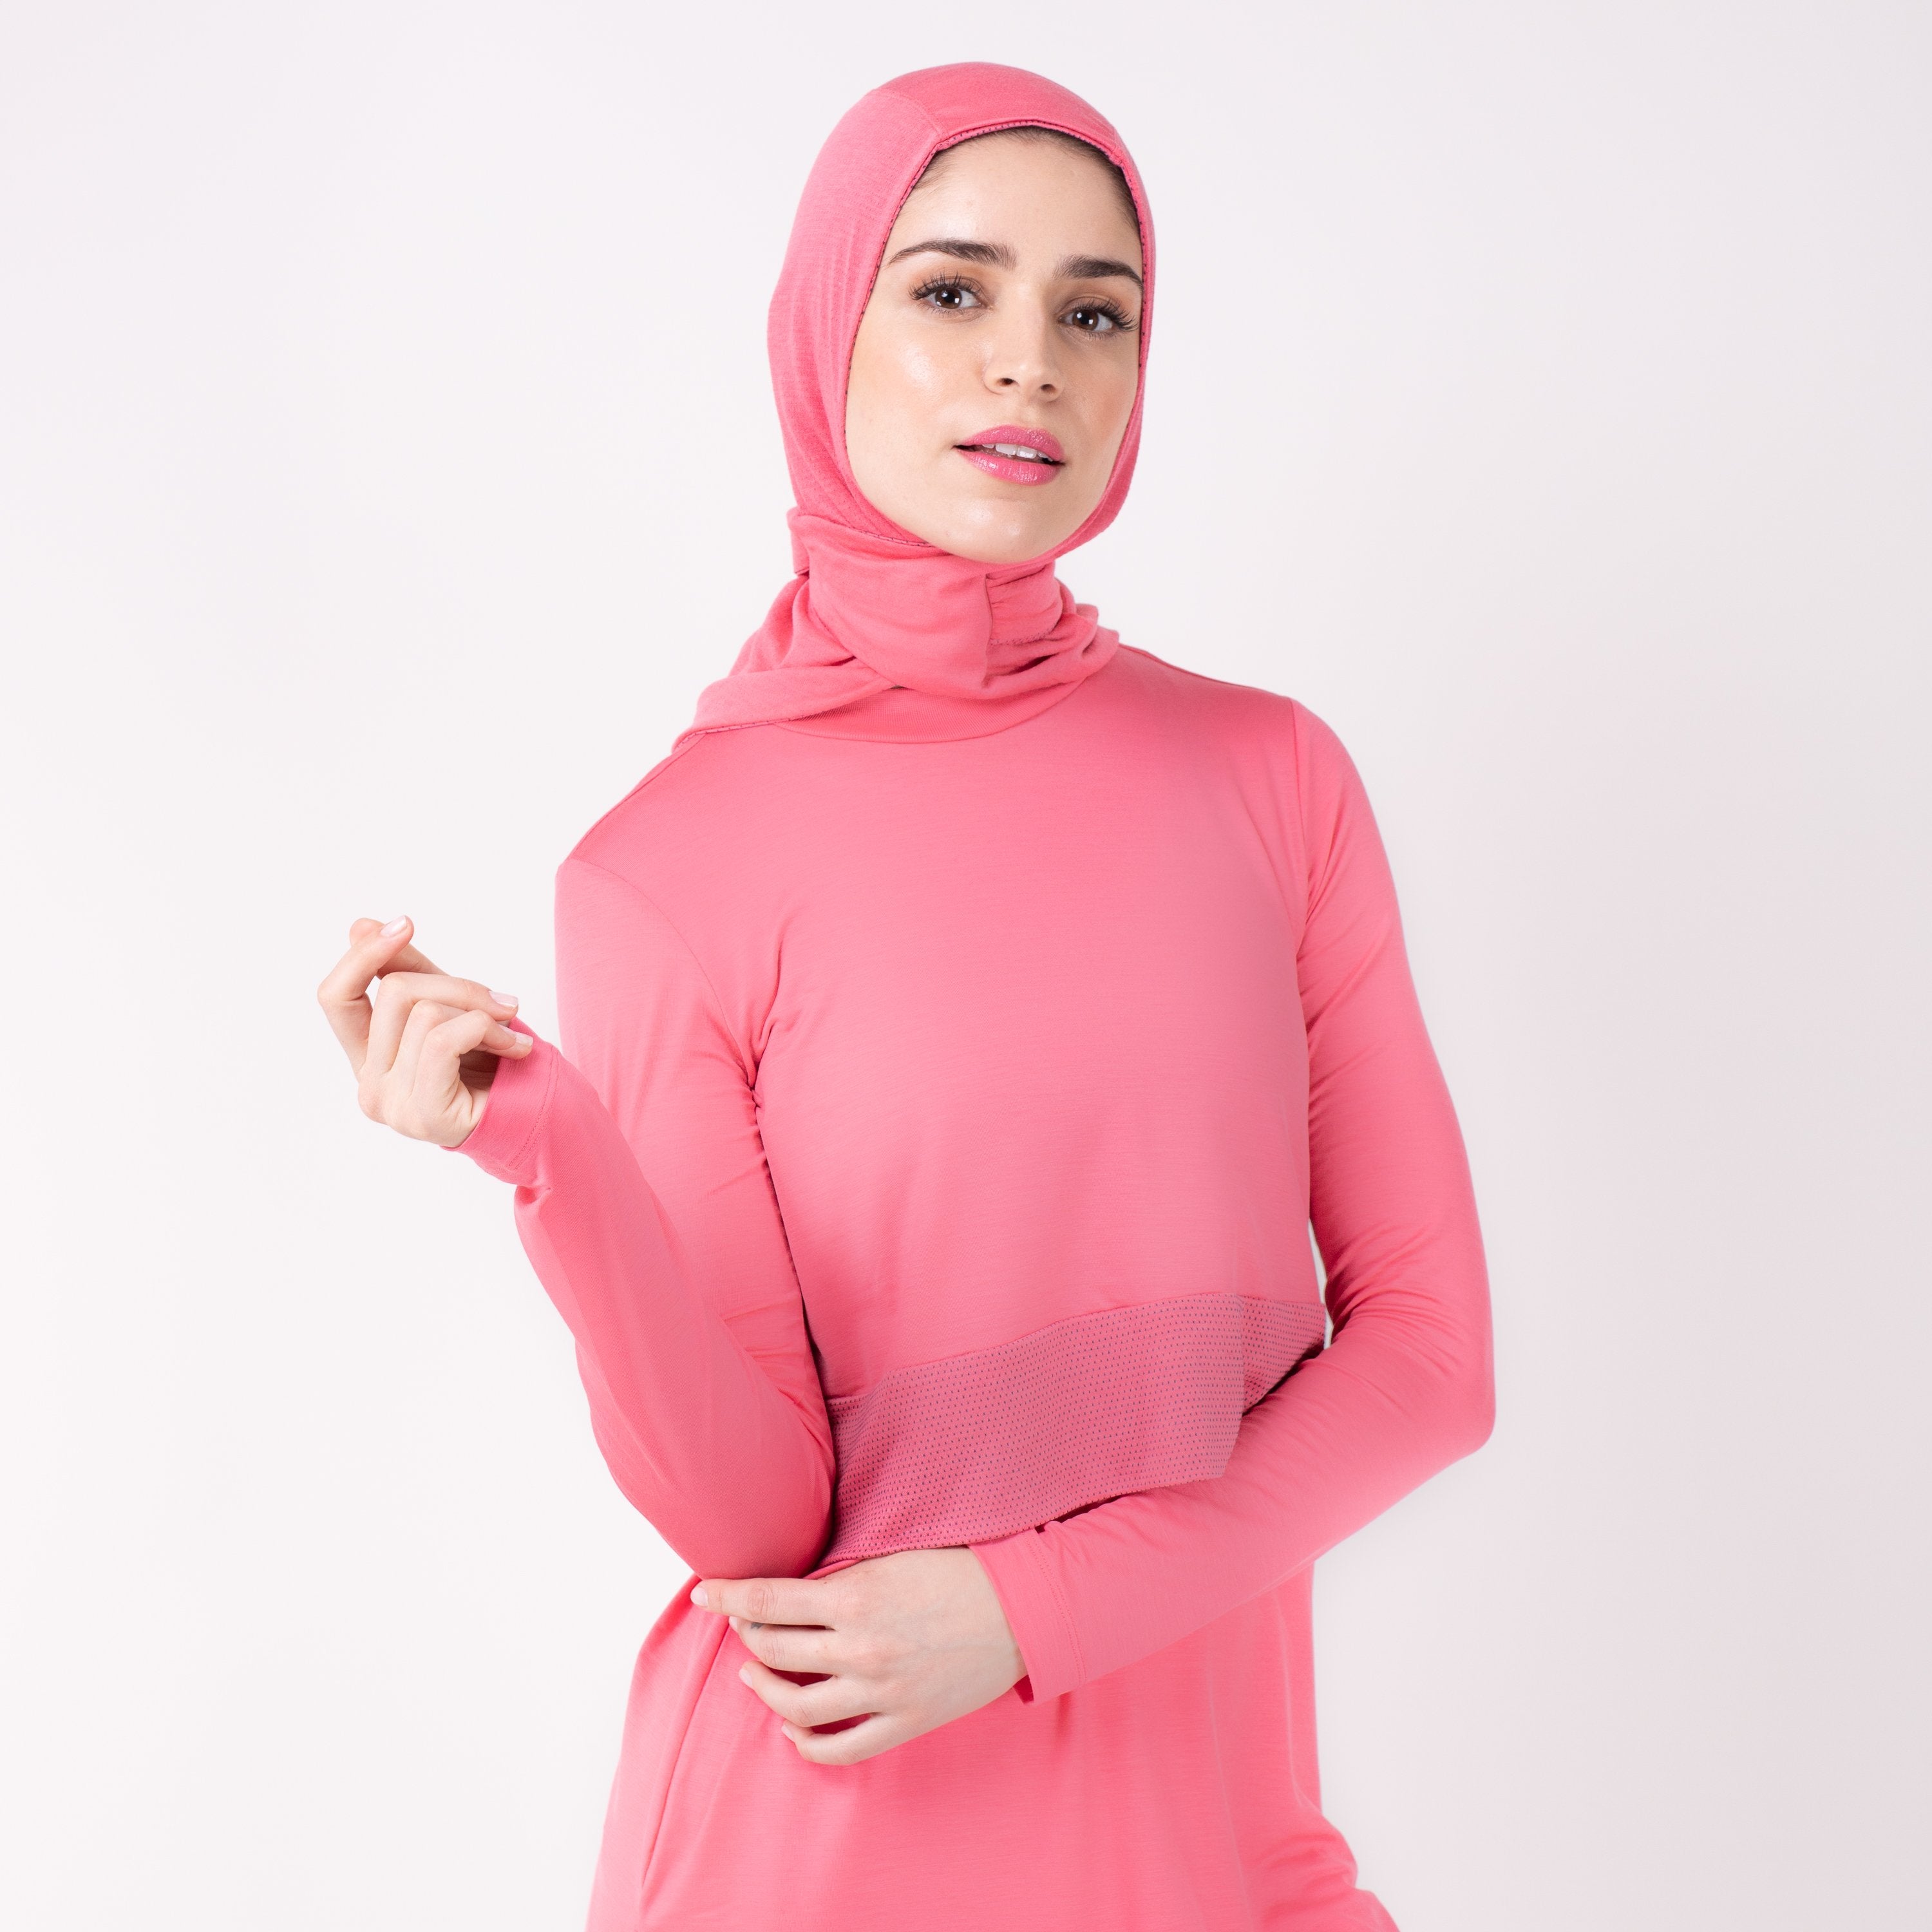 Woman wearing a pink shirt with a matching pink HAWA hijab.